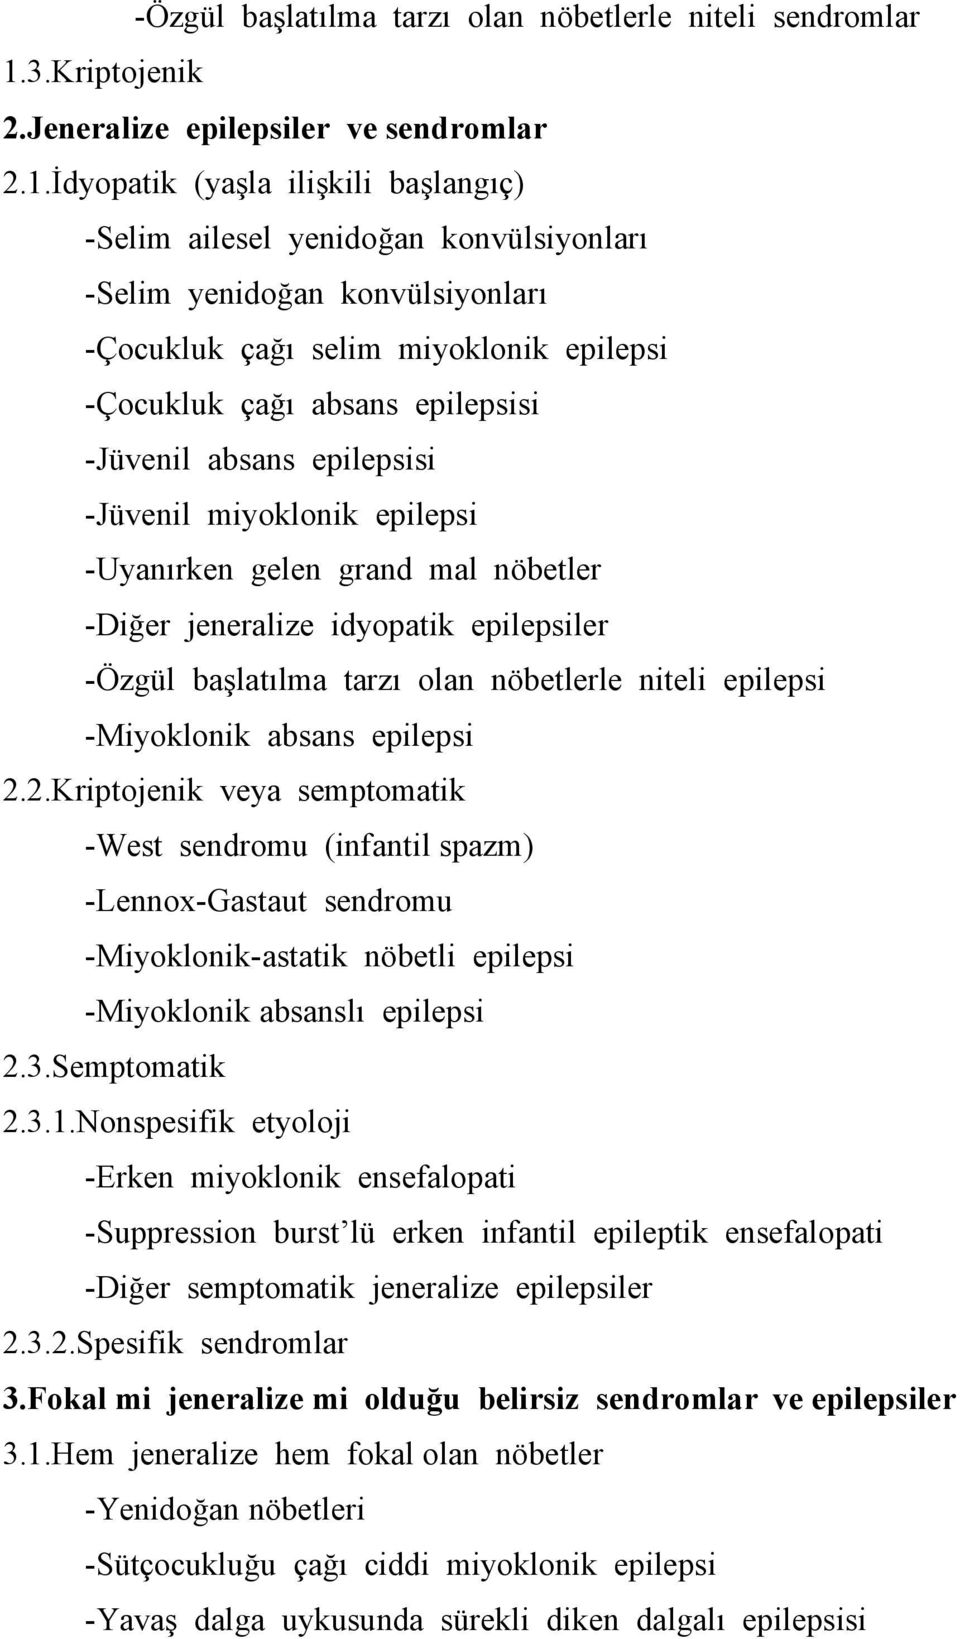 İdyopatik (yaşla ilişkili başlangıç) -Selim ailesel yenidoğan konvülsiyonları -Selim yenidoğan konvülsiyonları -Çocukluk çağı selim miyoklonik epilepsi -Çocukluk çağı absans epilepsisi -Jüvenil